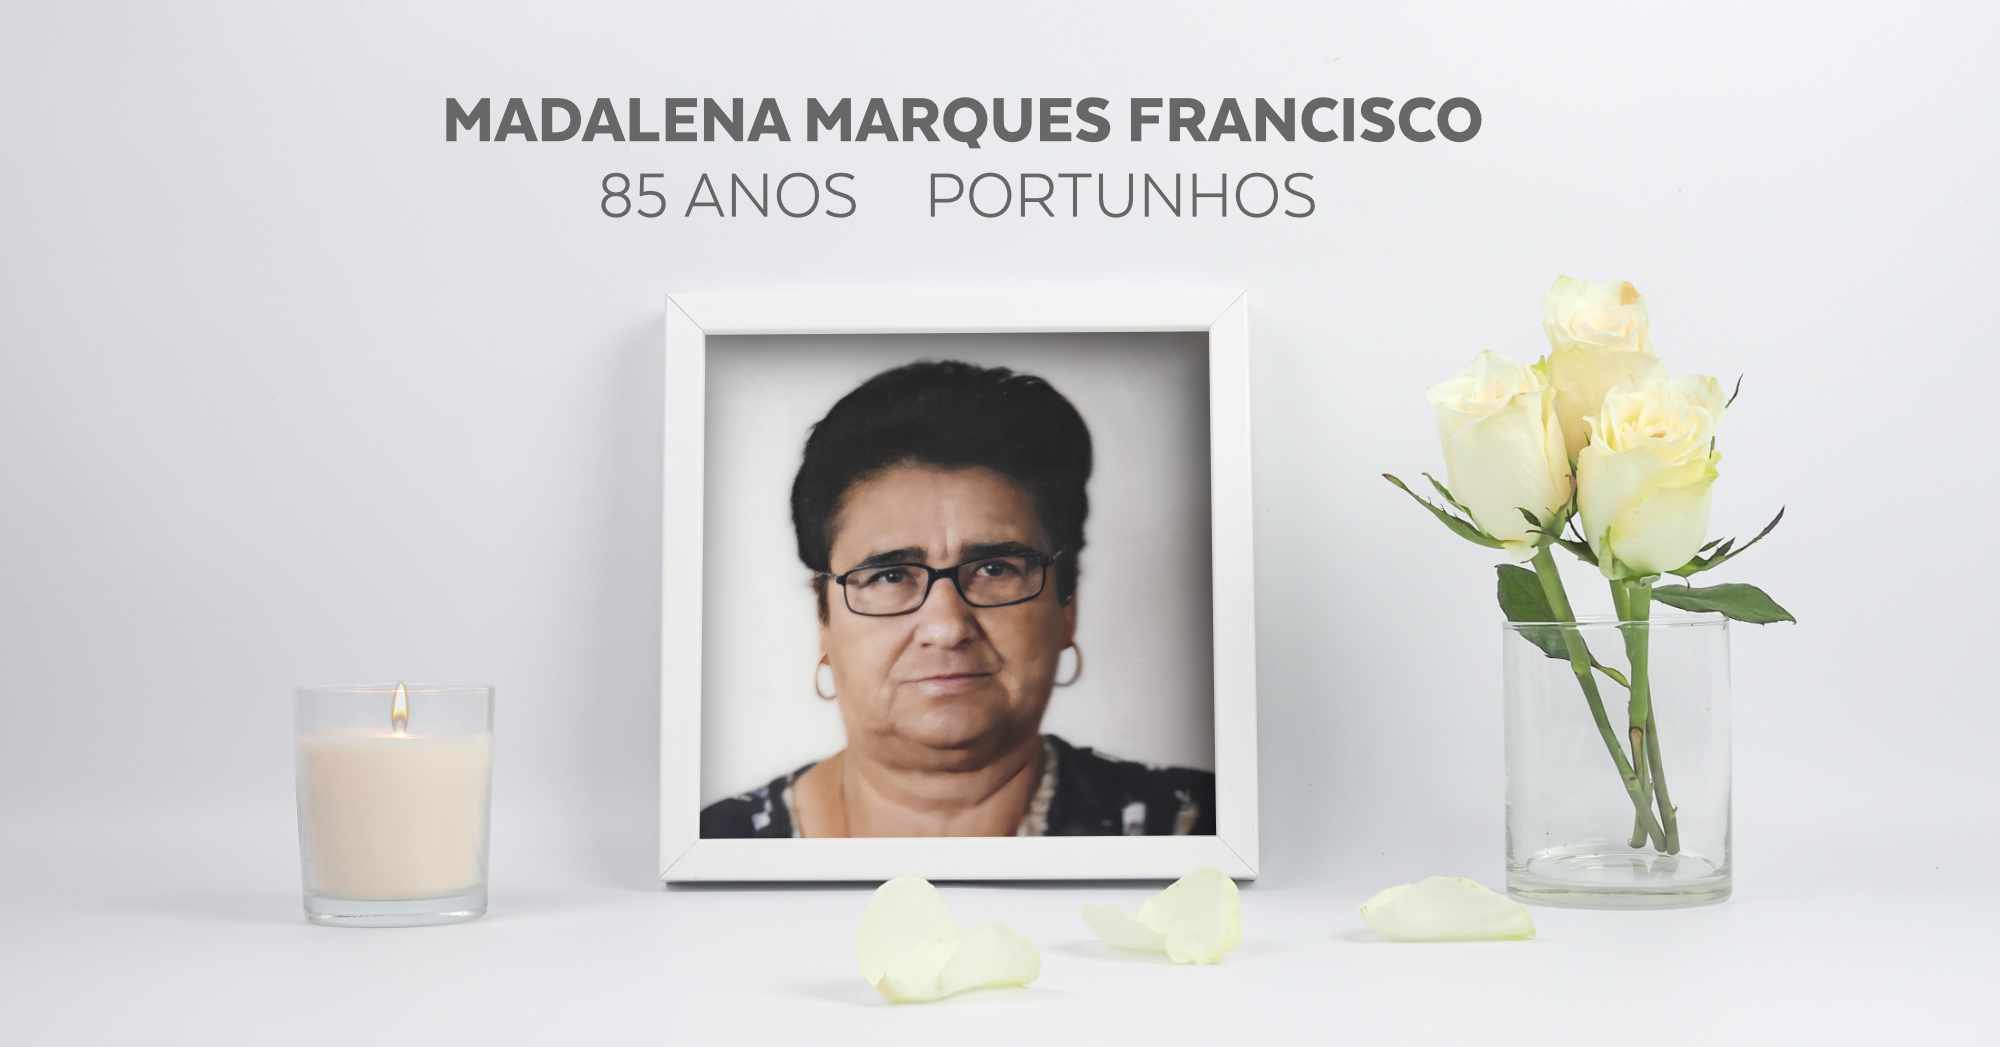 Madalena Marques Francisco